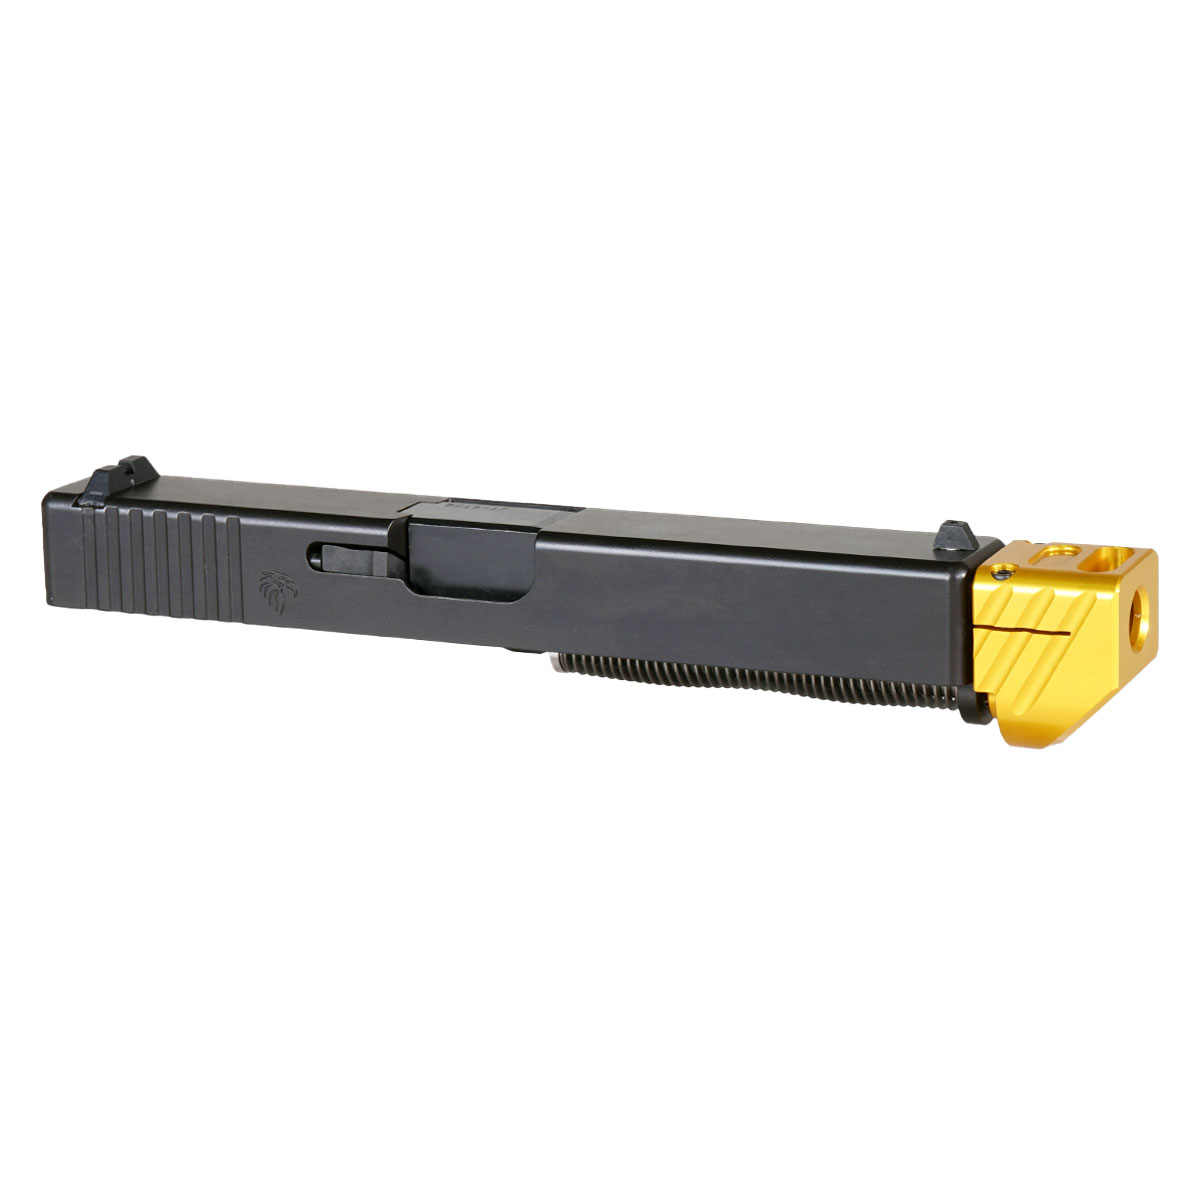 OTD 'Boomerango V2 w/ Gold Compensator' 9mm Complete Slide Kit - Glock 17 Gen 1-3 Compatible